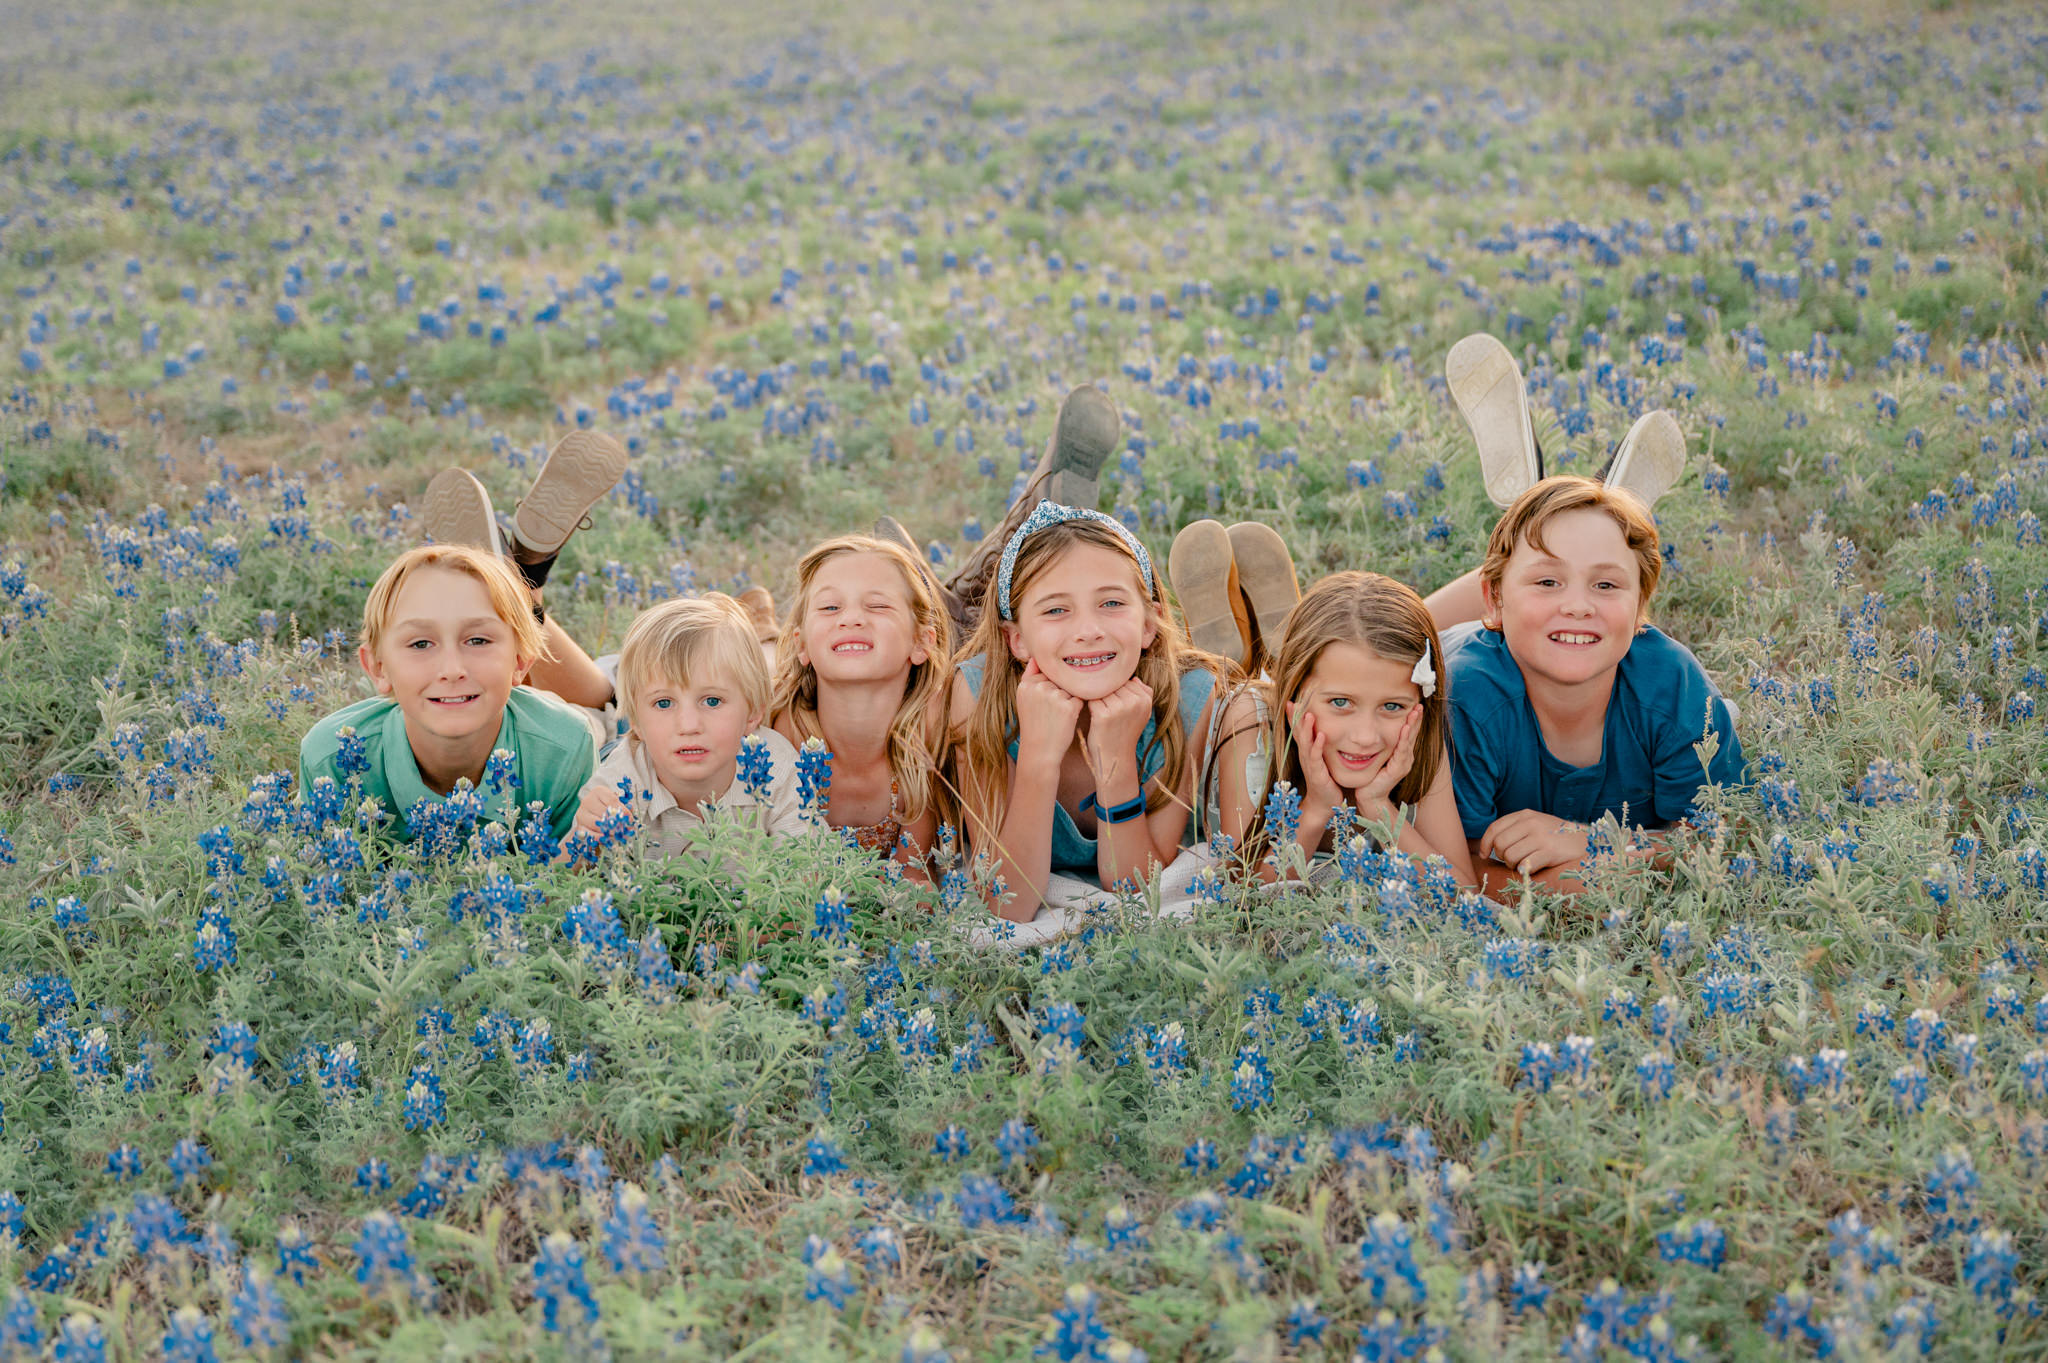 Six siblings in a summer field.